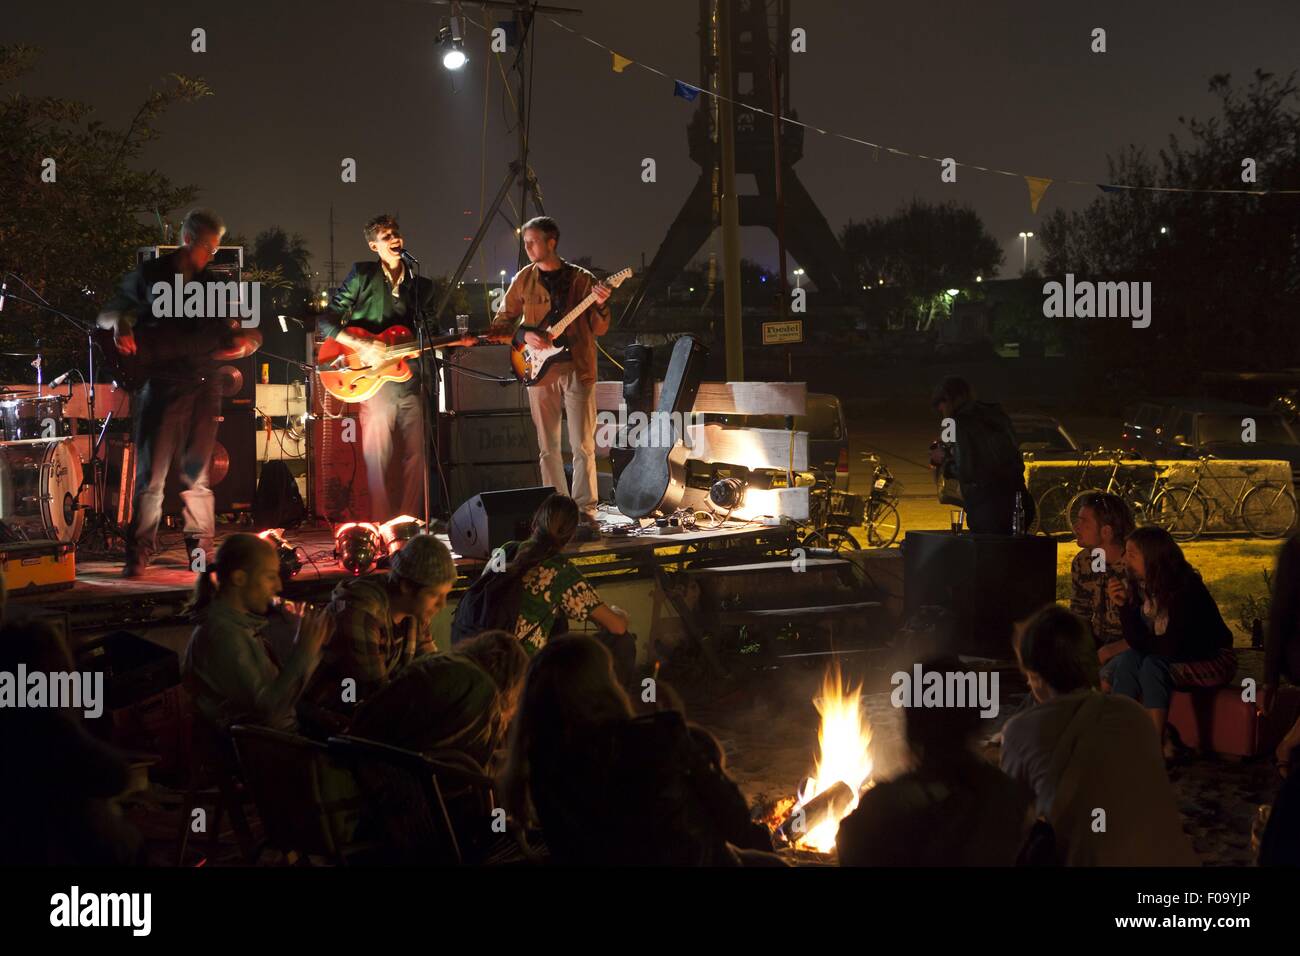 People at concert outside Noorderlicht Cafe, NDSM shipyard, Noord, Amsterdam, Netherlands Stock Photo